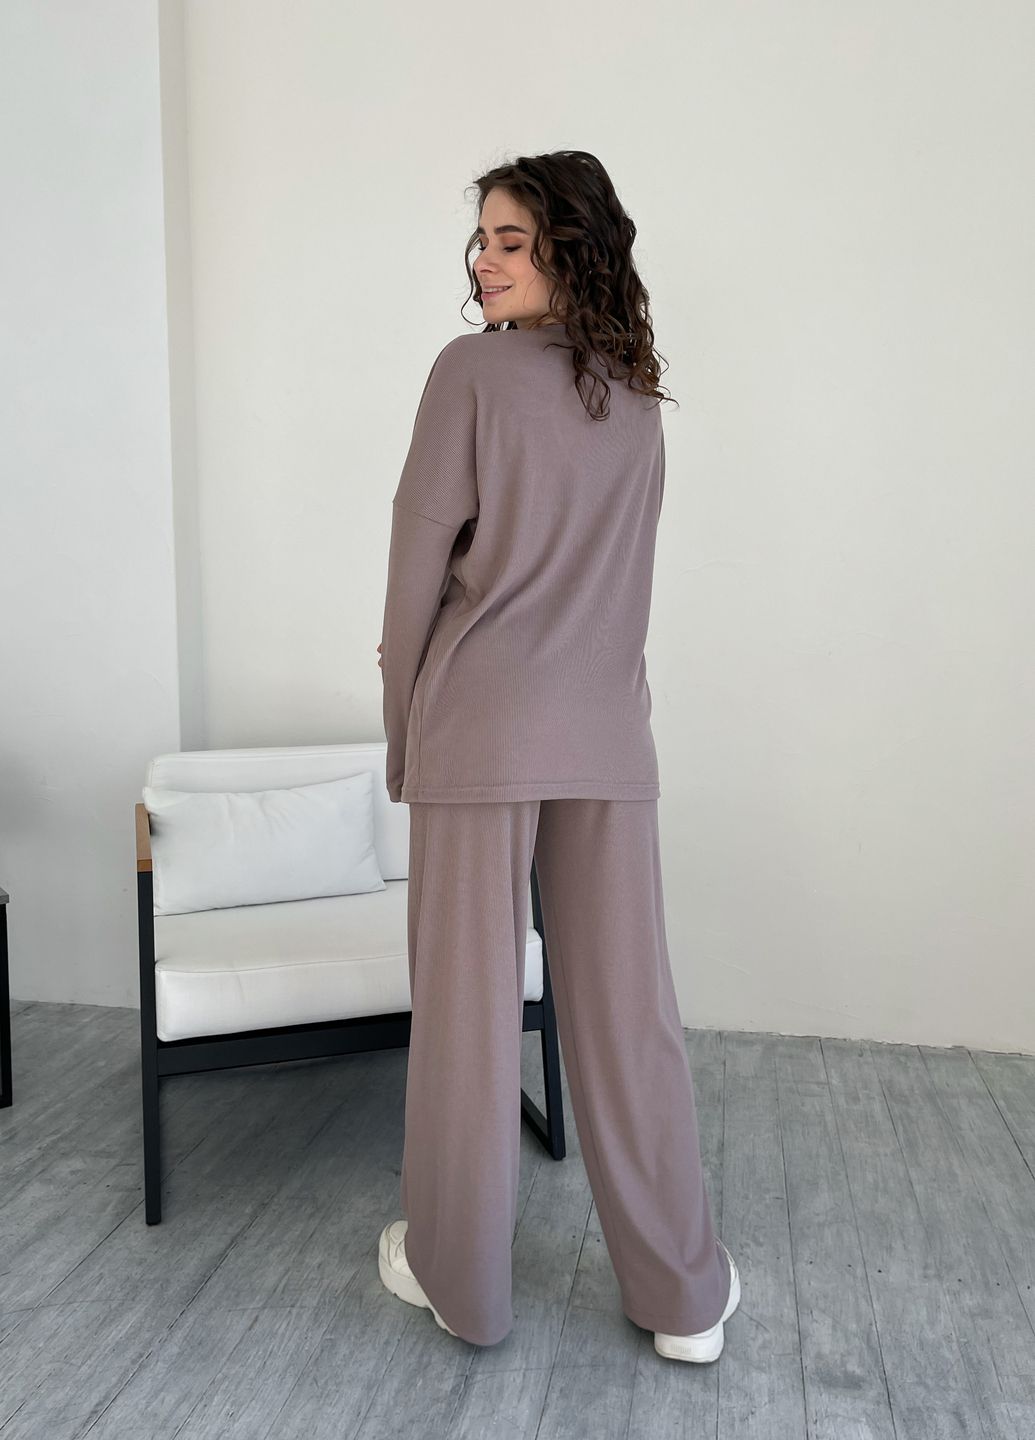 Купить Костюм женский в рубчик цвета мокко с широкими штанами Merlini Мантуя 100000404, размер XS-M в интернет-магазине